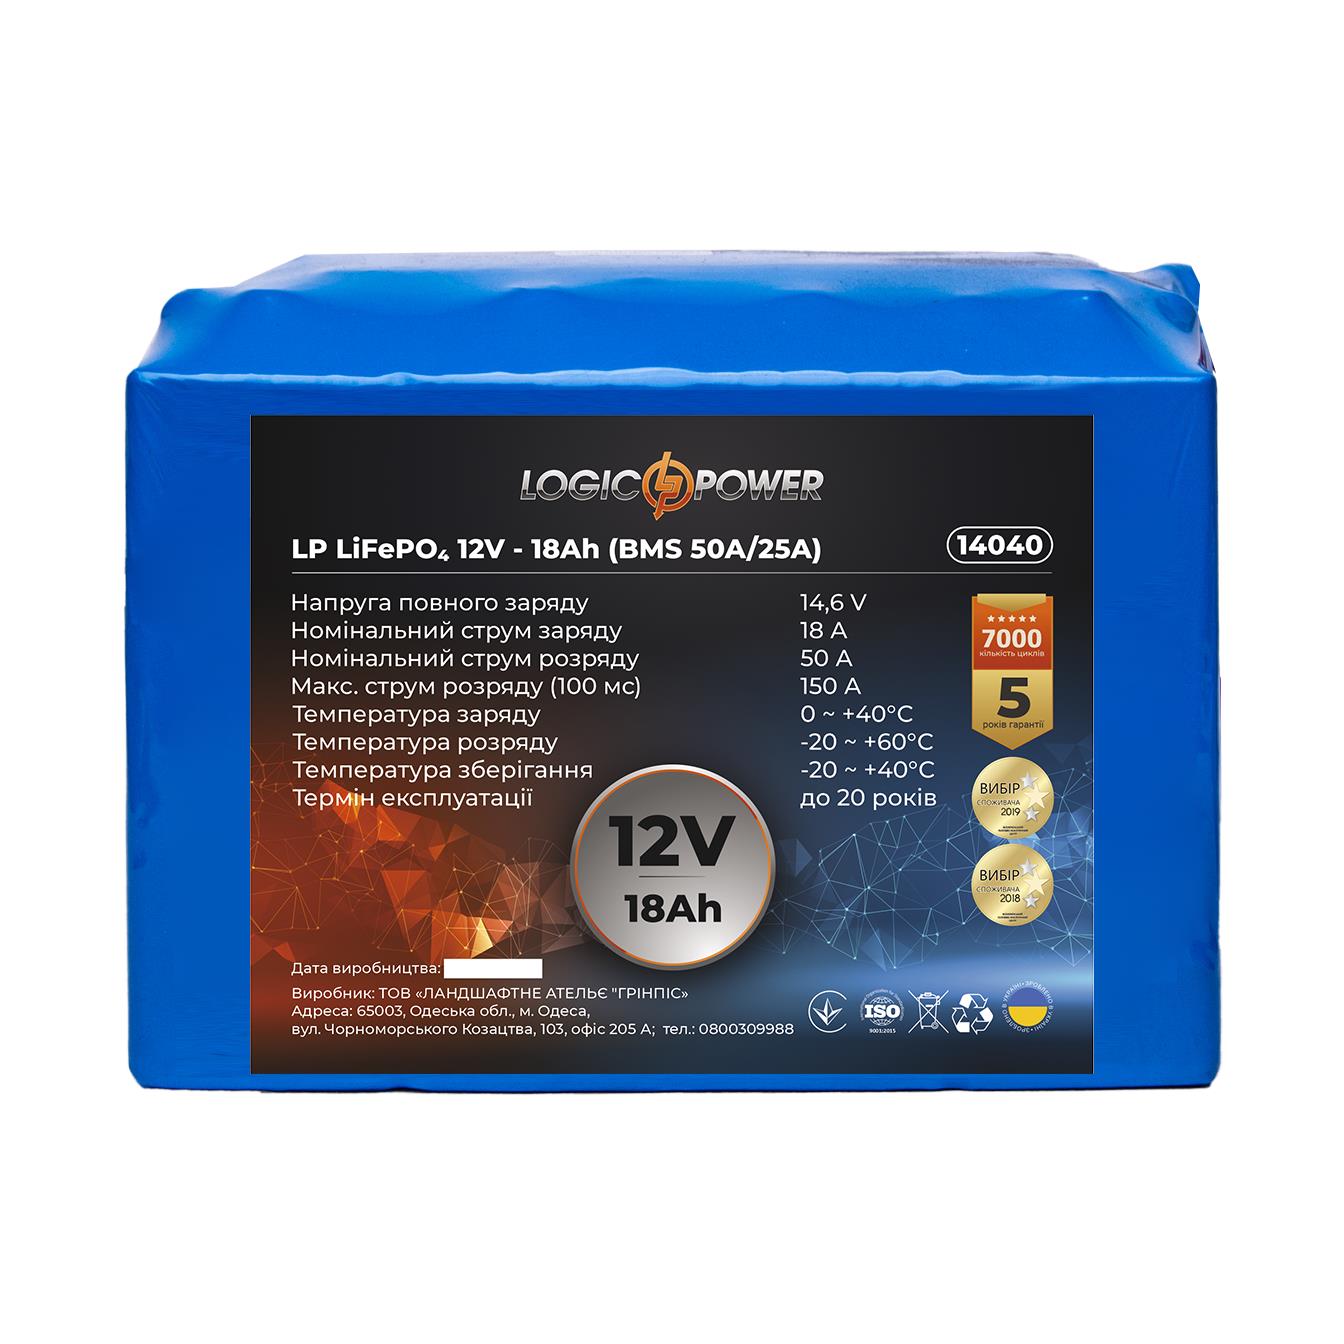 Аккумулятор литий-железо-фосфатный LogicPower LP LiFePO4 12V - 18 Ah (BMS 50A/25A) (14040) в интернет-магазине, главное фото